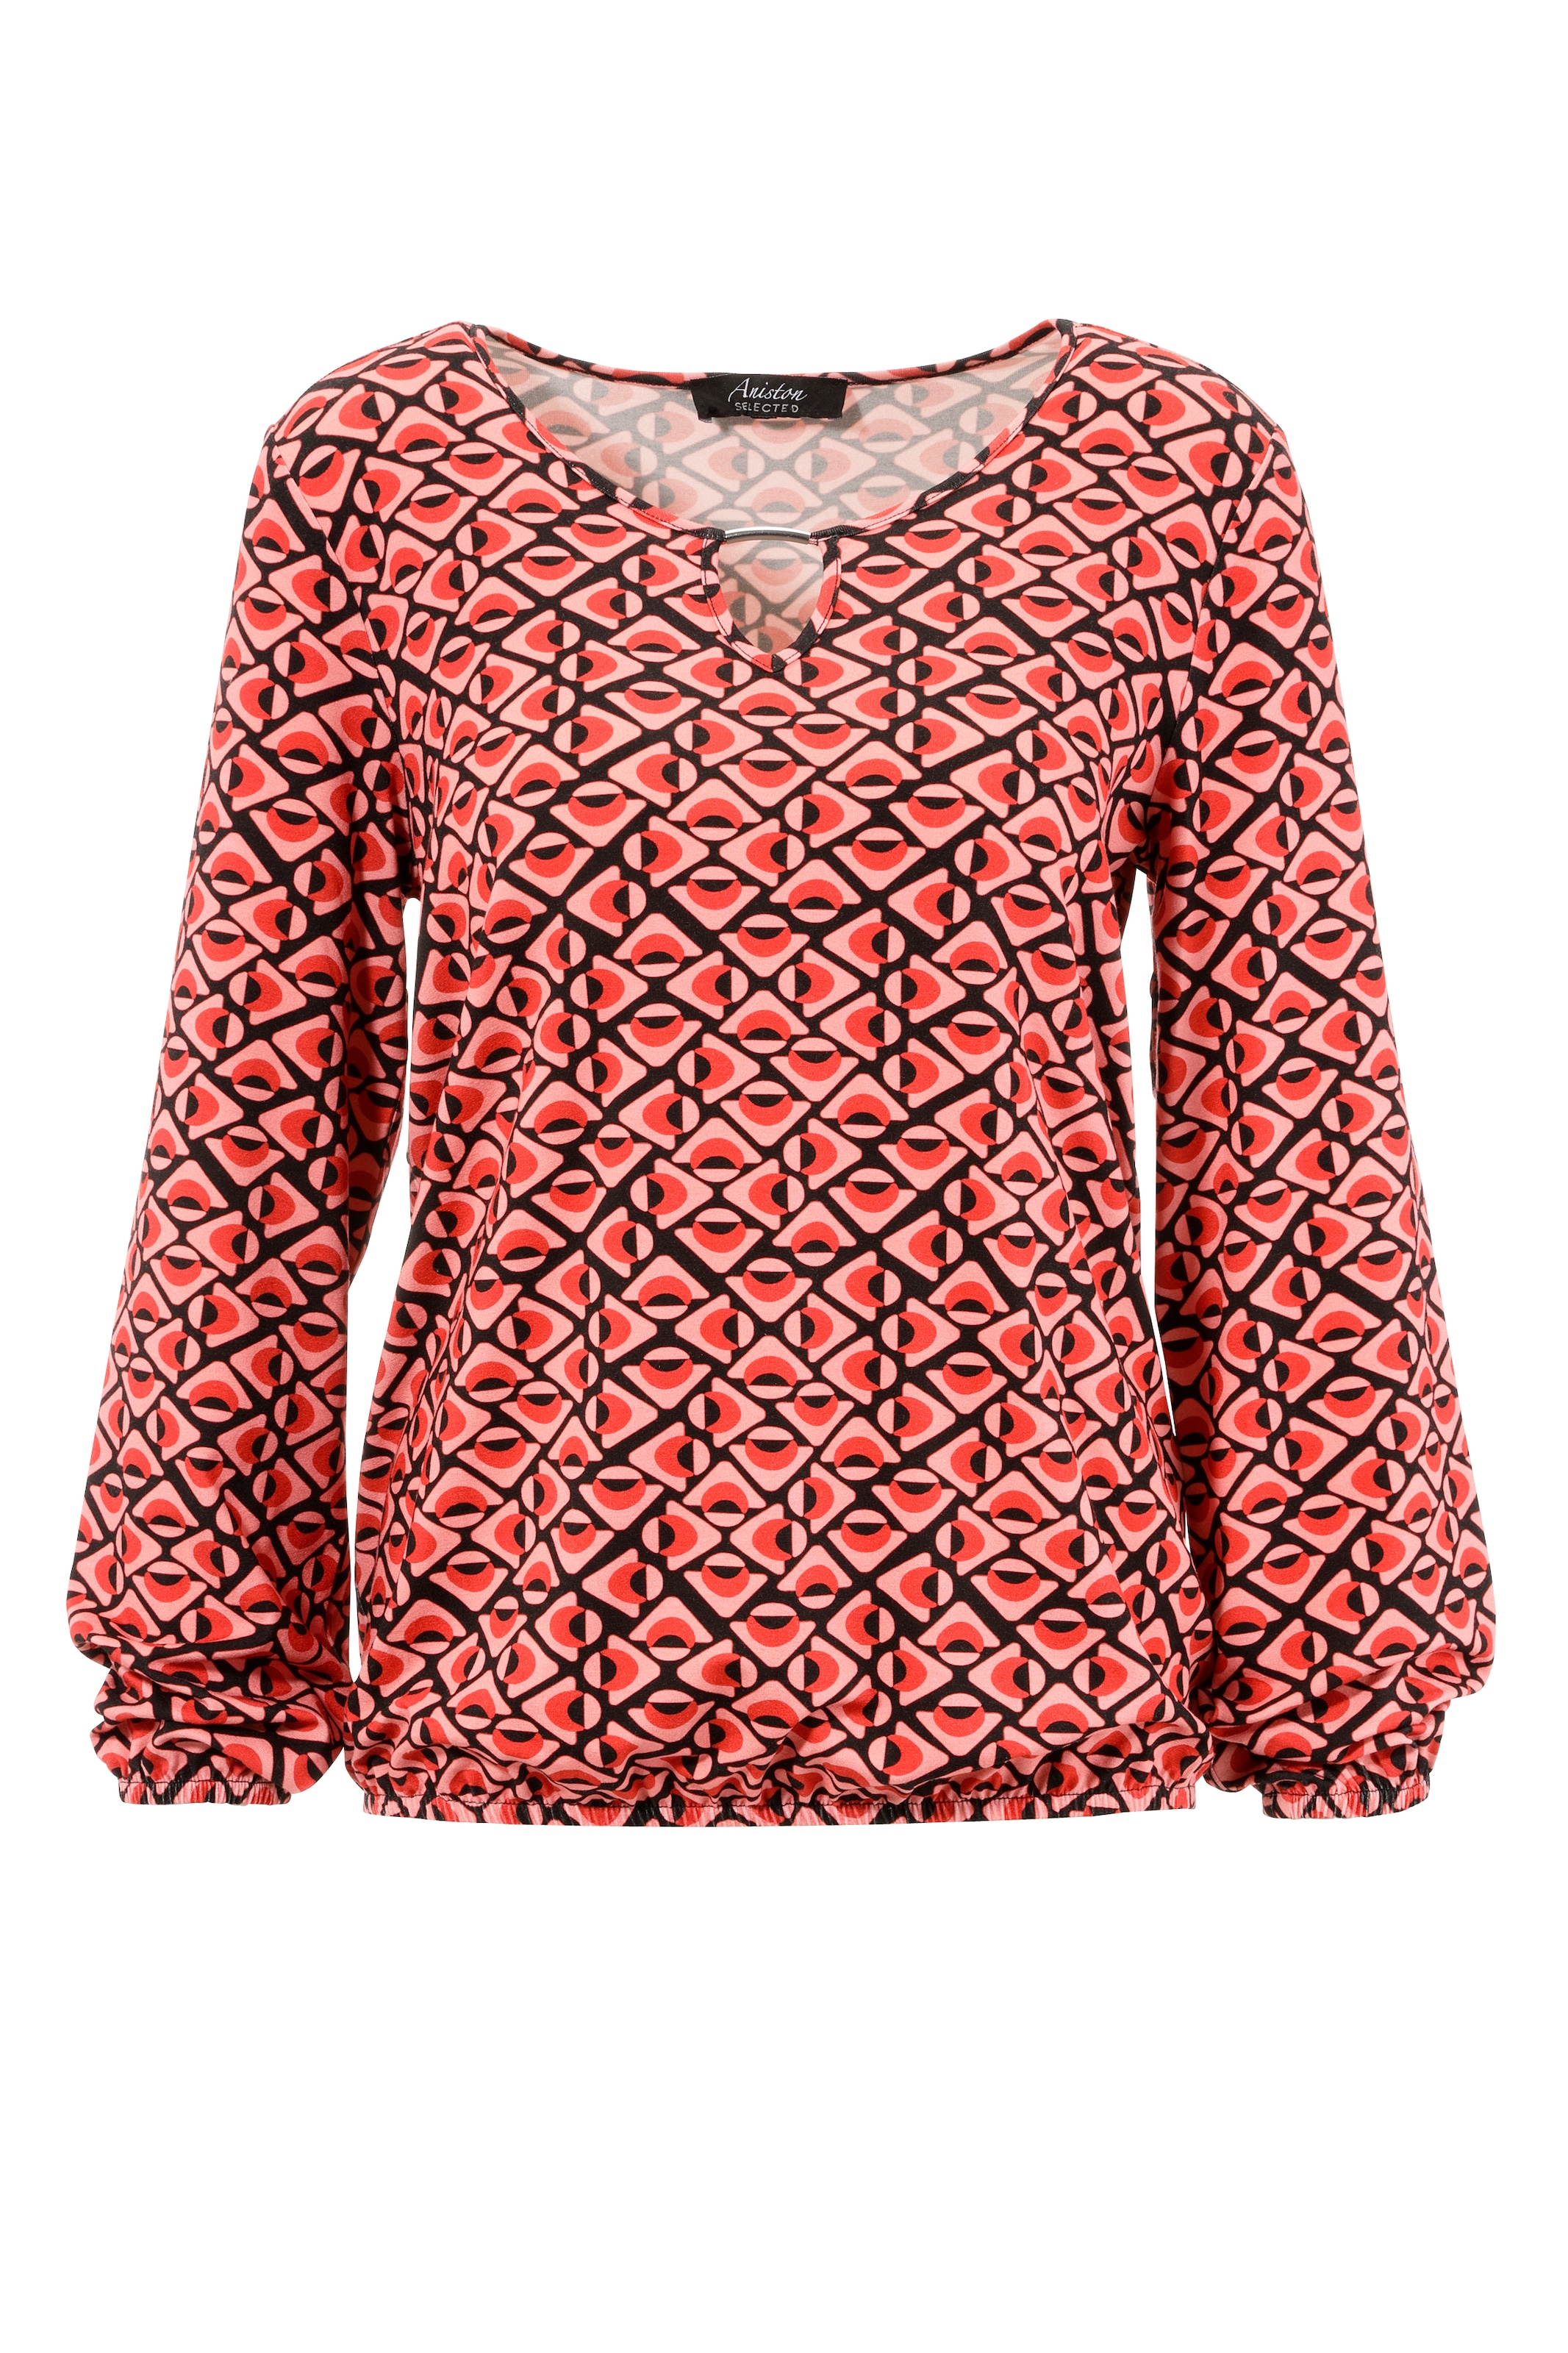 Aniston SELECTED Rundhalsshirt, mit Cut-Out und Zierdetail am Ausschnitt  bestellen im OTTO Online Shop | Rundhalsshirts